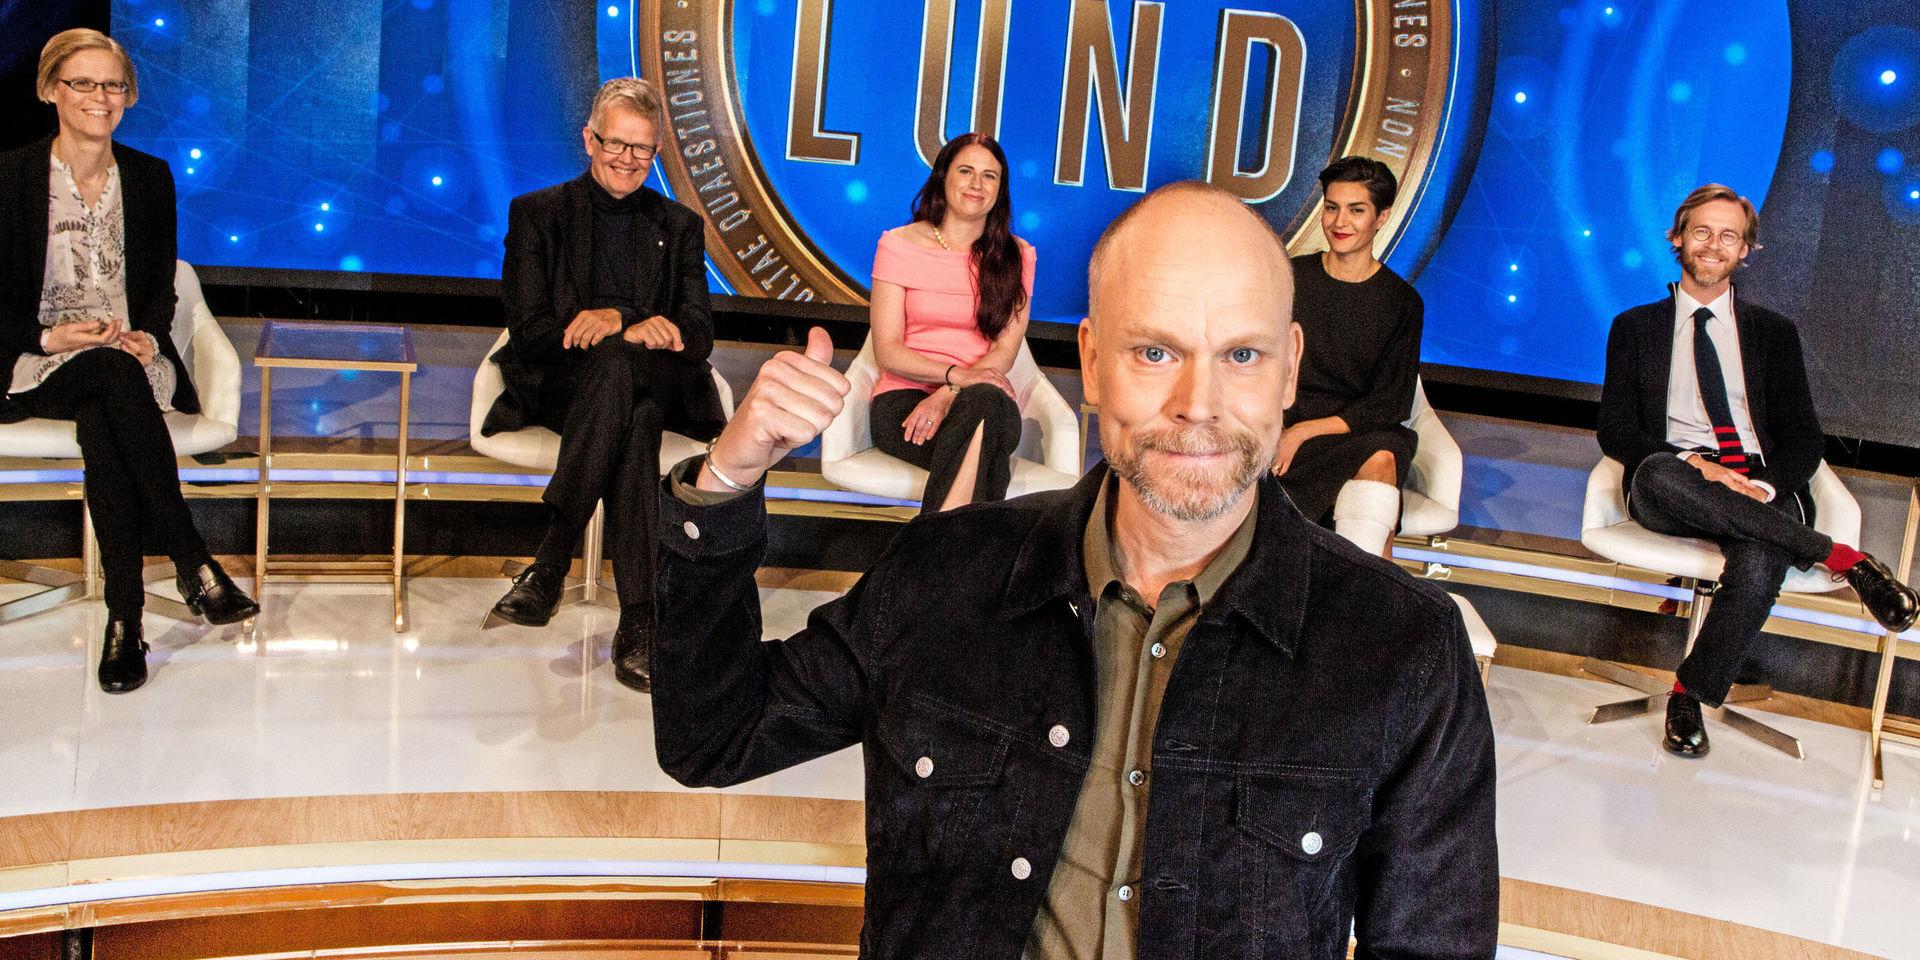 Kristian Luuk har varit programledare för Fråga Lund i tre säsonger och varje avsnitt når nu en miljonpublik.